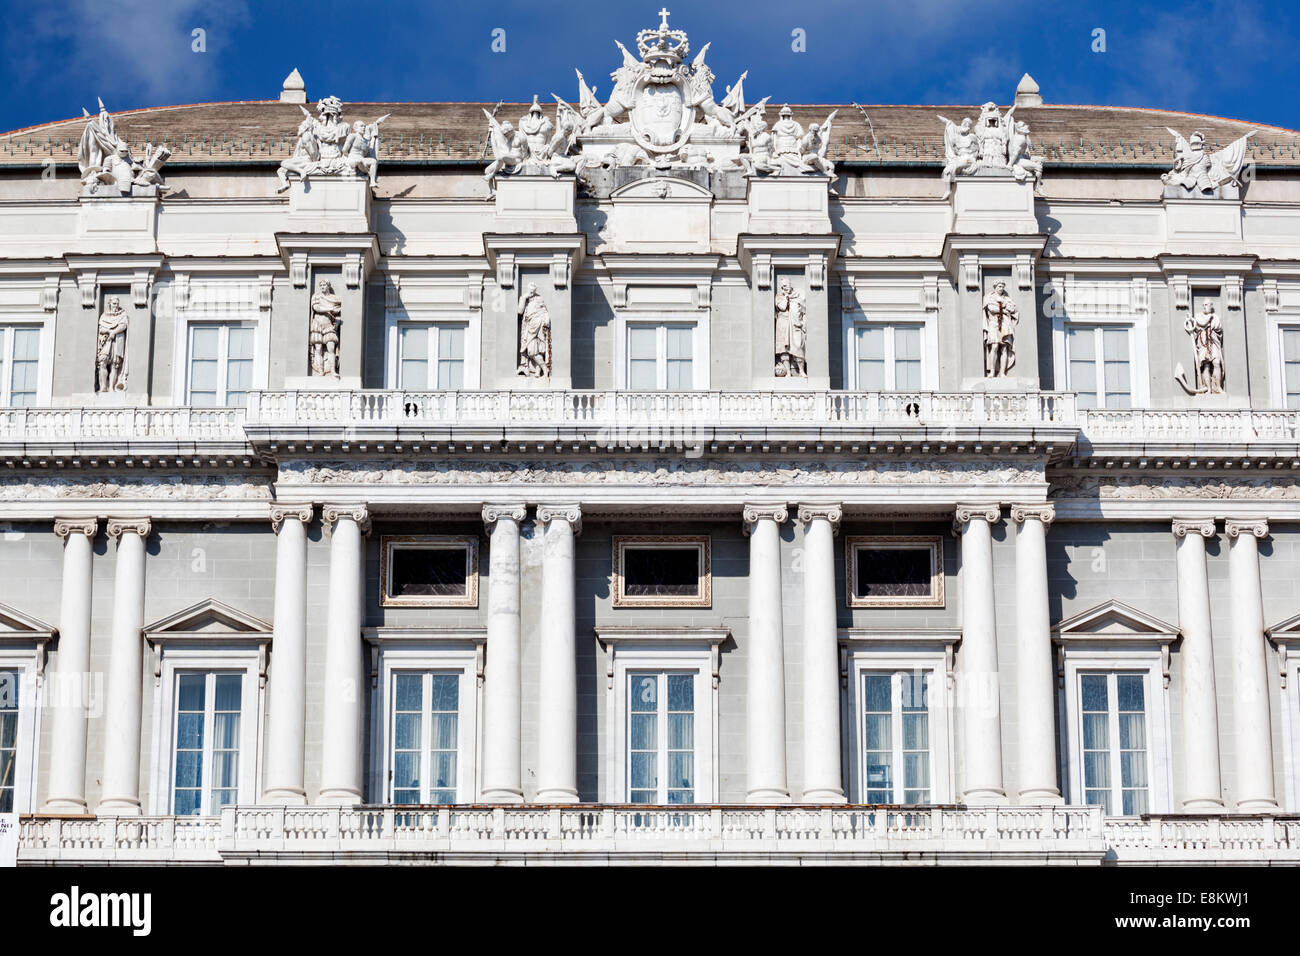 Palazzo Ducale, Genoa, Italy. Stock Photo